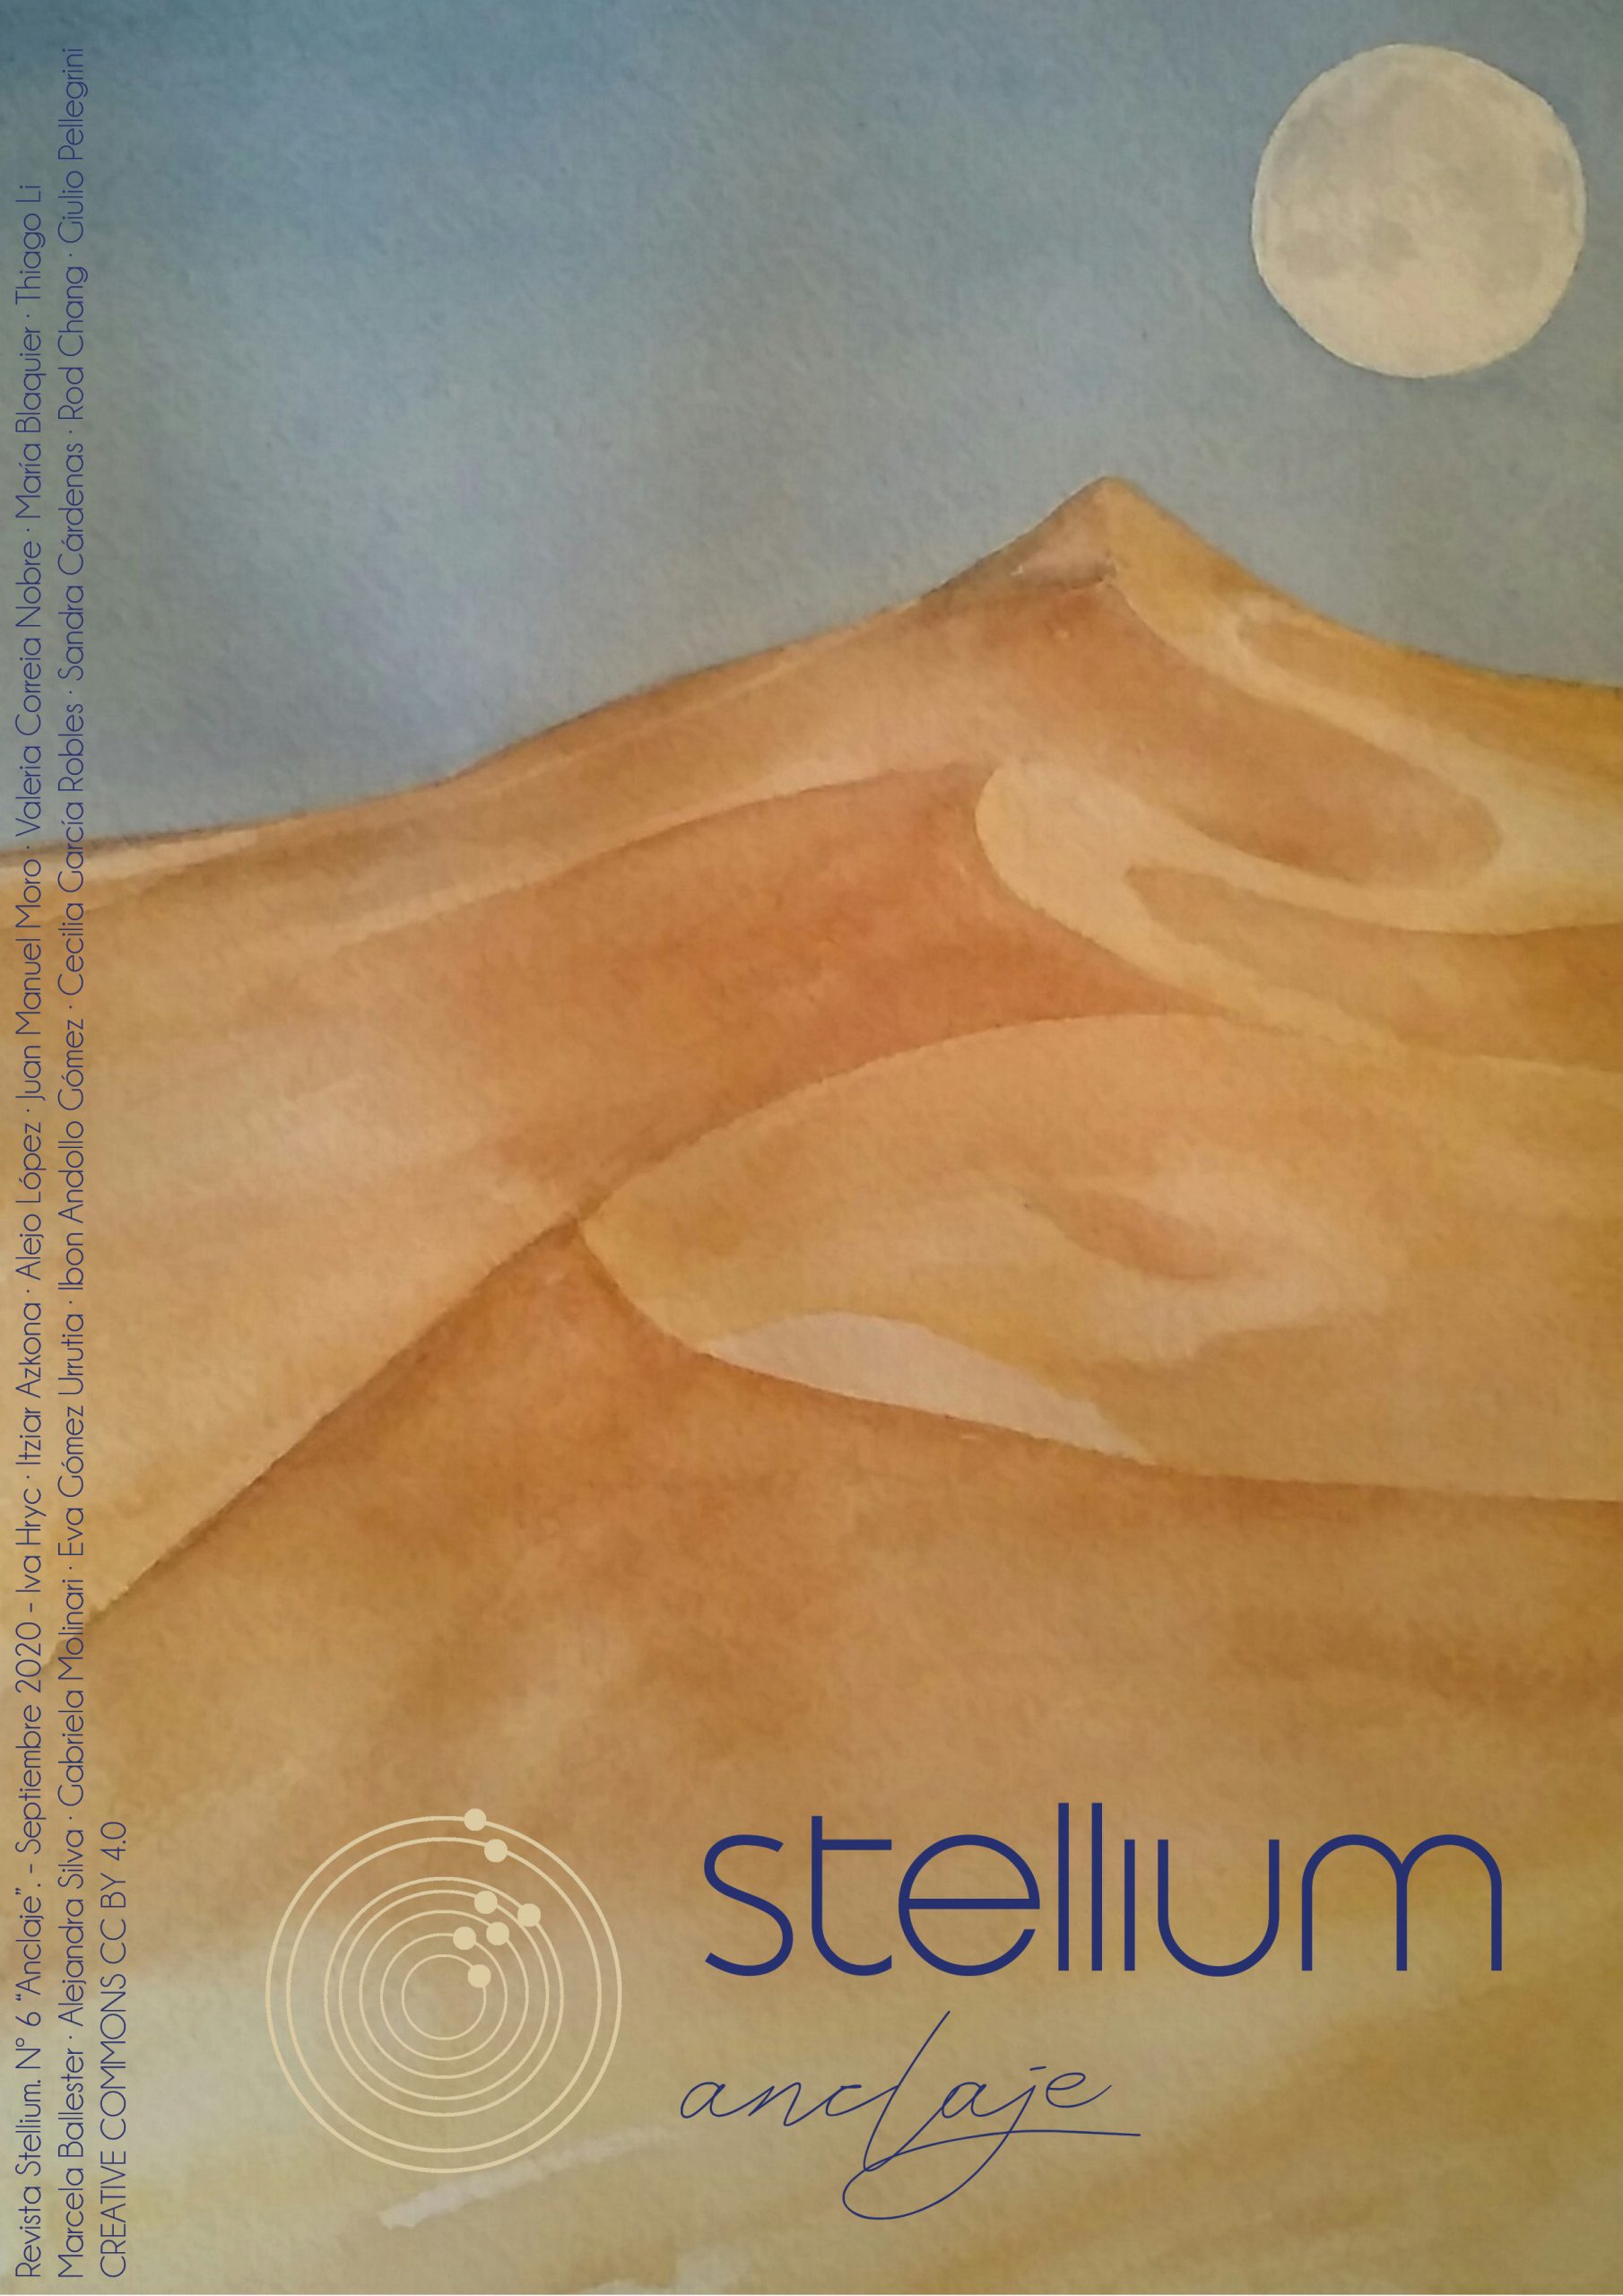 Stellium #6 Anclaje